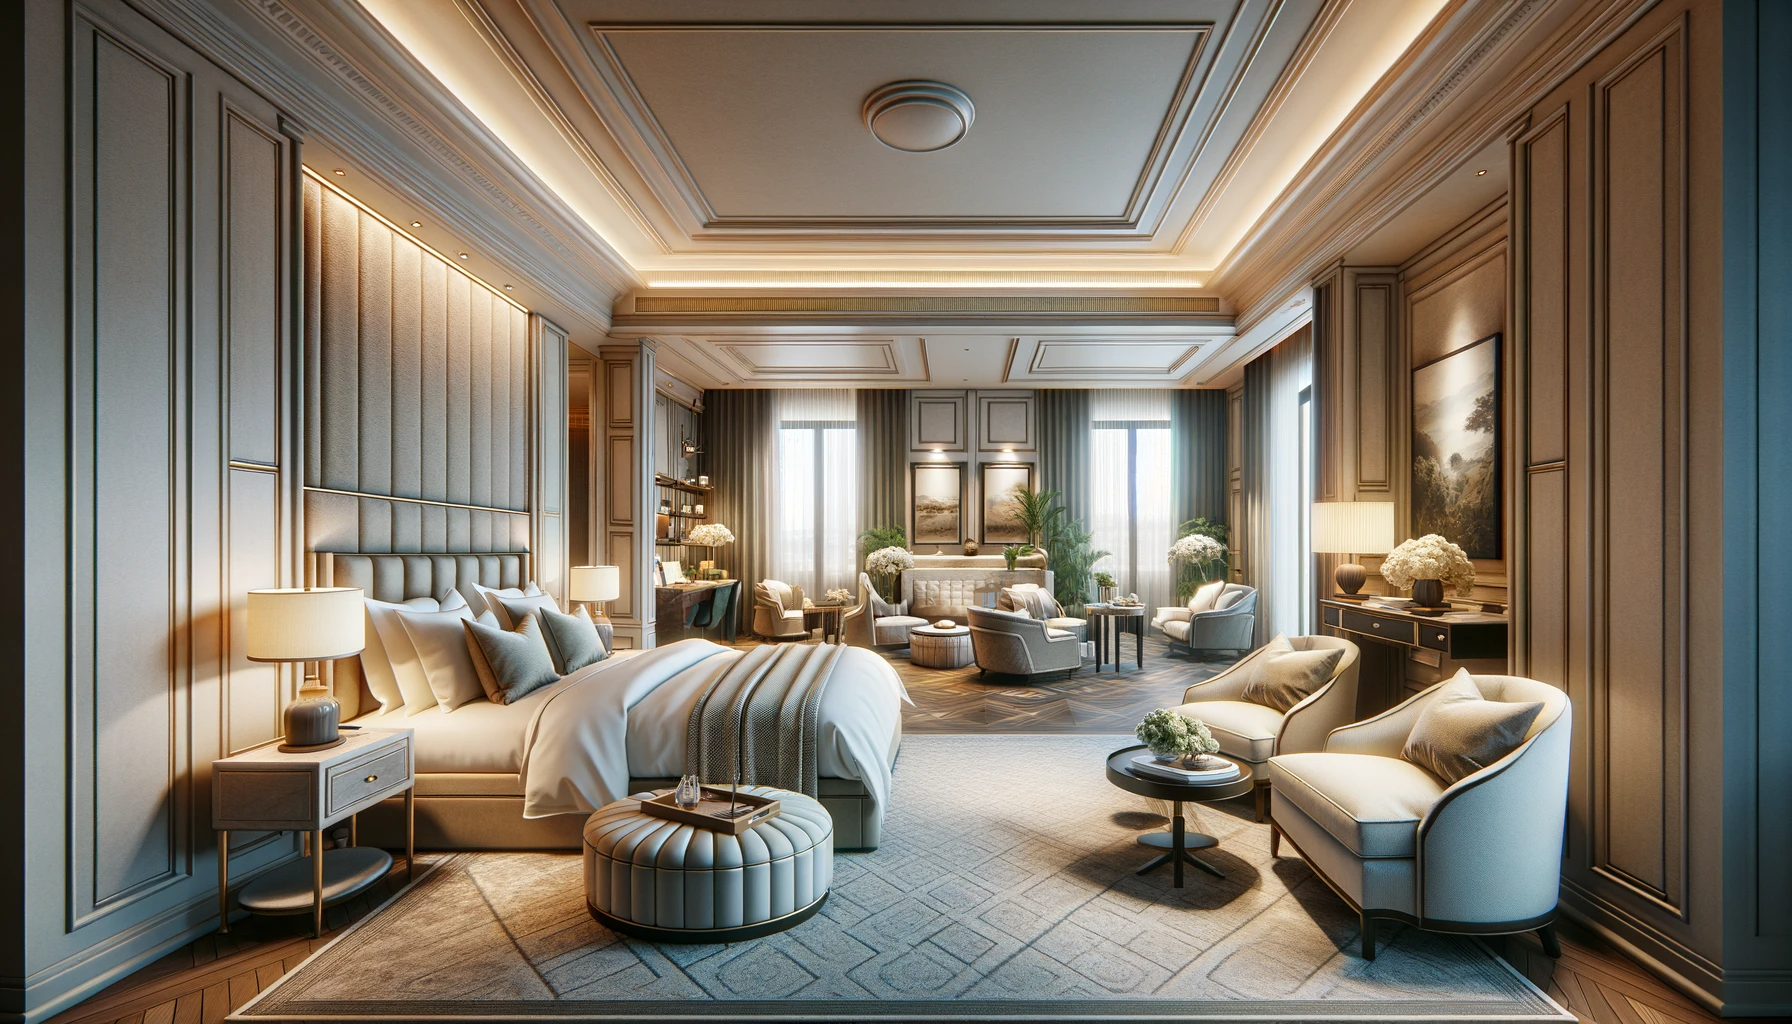 Chambre hôtel élégante Rome, décor raffiné, ambiance luxueuse